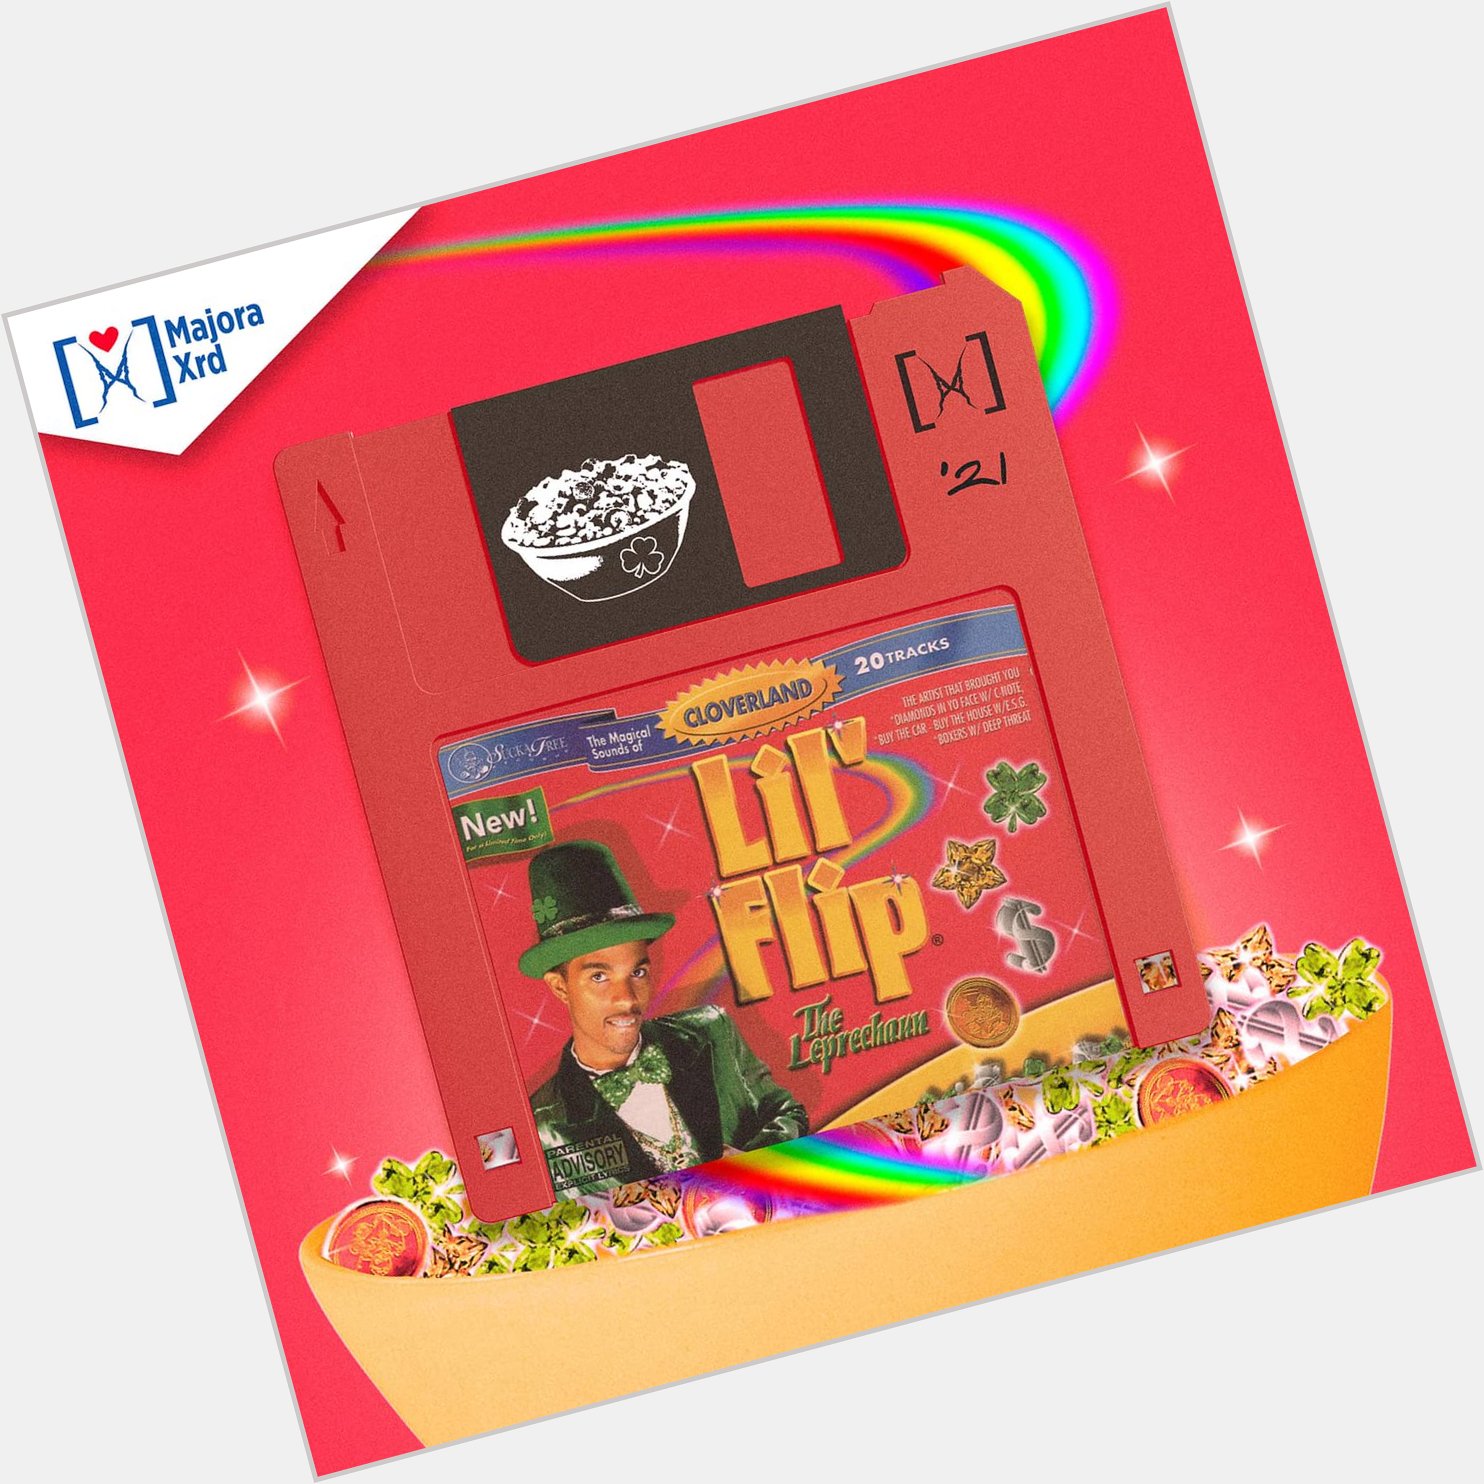 Lil Flip \The Leprechaun\
Floppy Disk   Happy birthday  